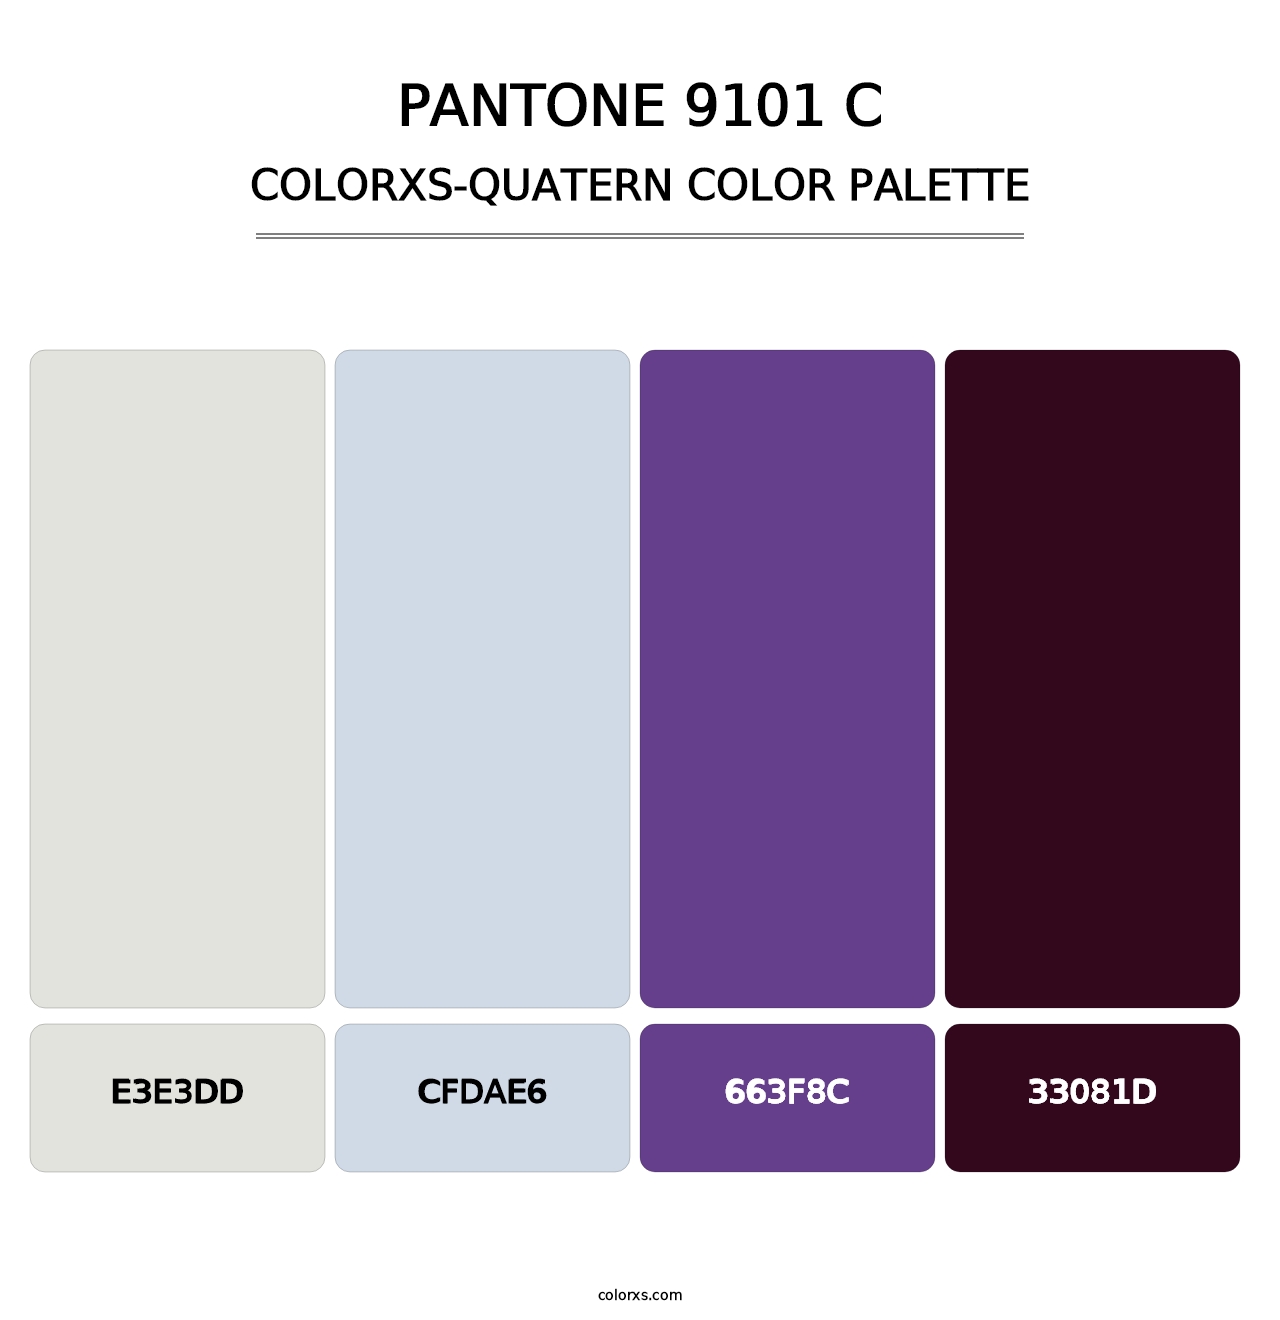 PANTONE 9101 C - Colorxs Quatern Palette